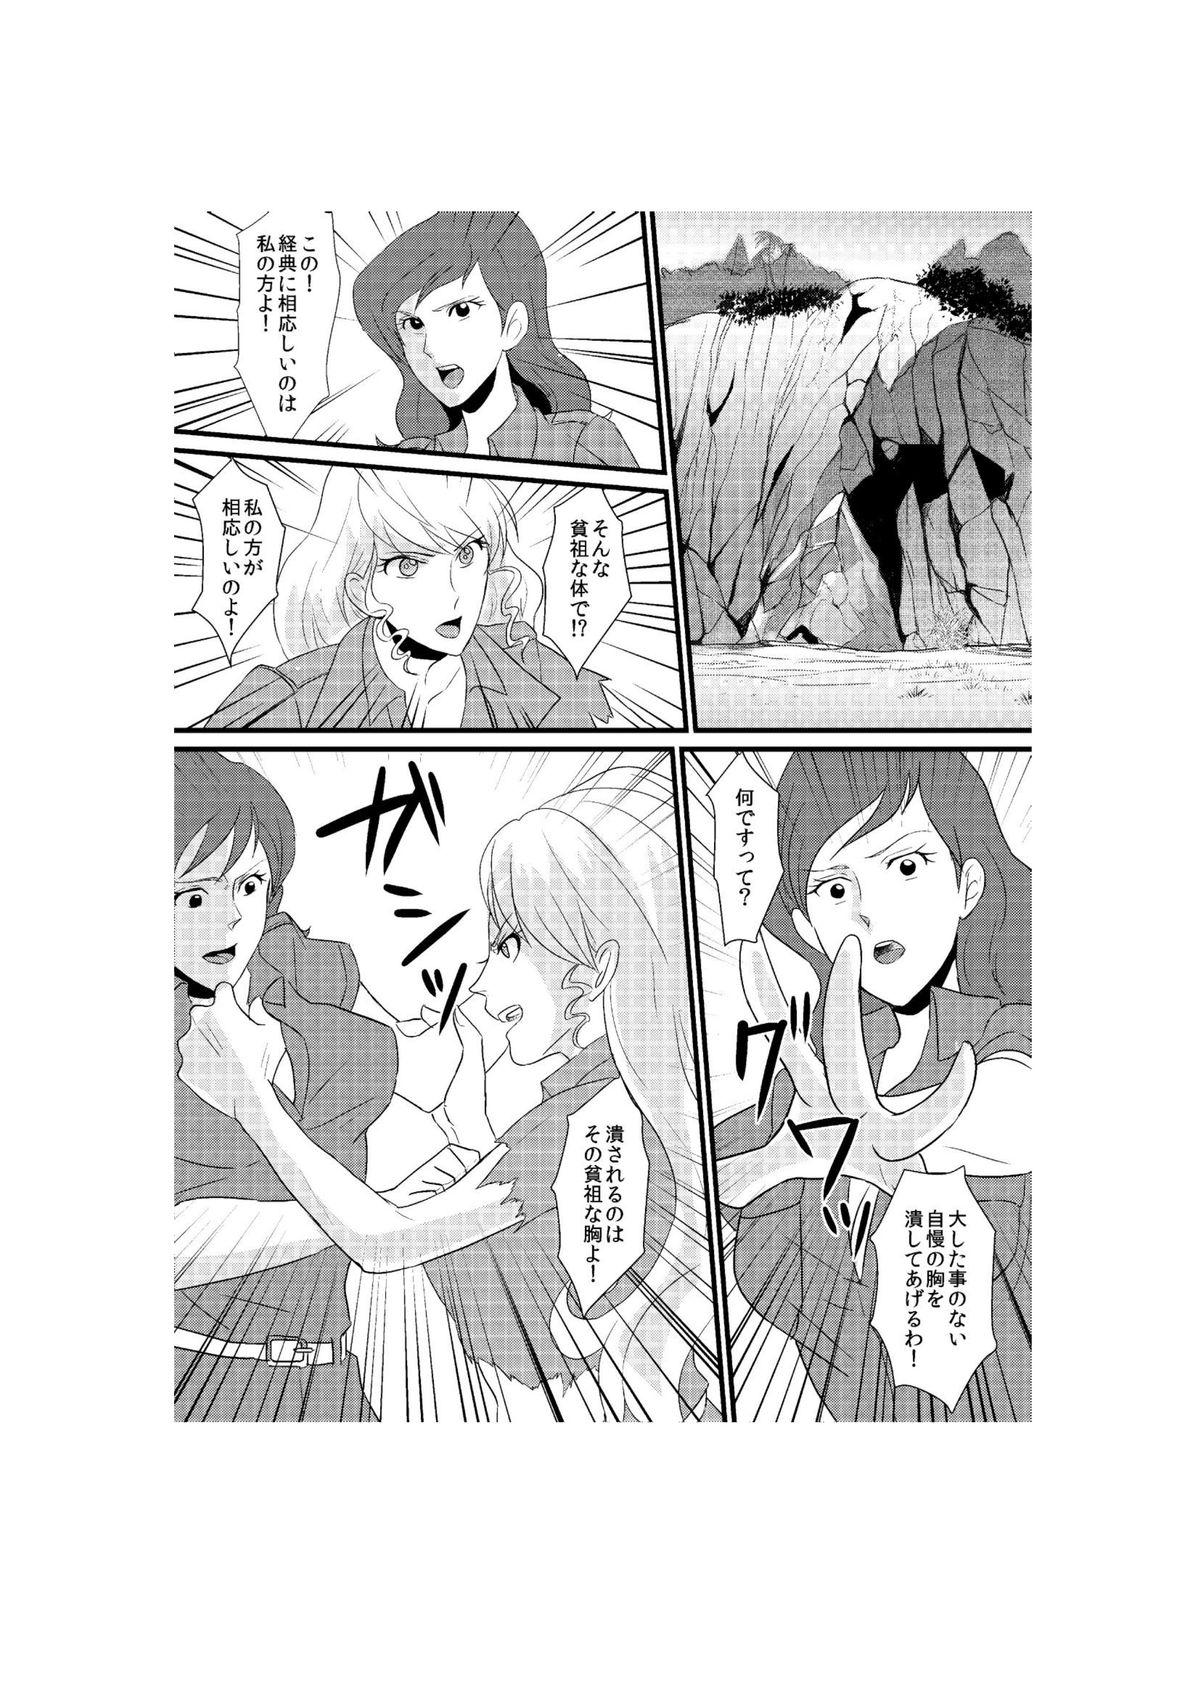 Collar Fushi no Kyouten Ureta Onna no Tatakai - Fujiko VS Emmanuelle - Lupin iii Full - Page 1